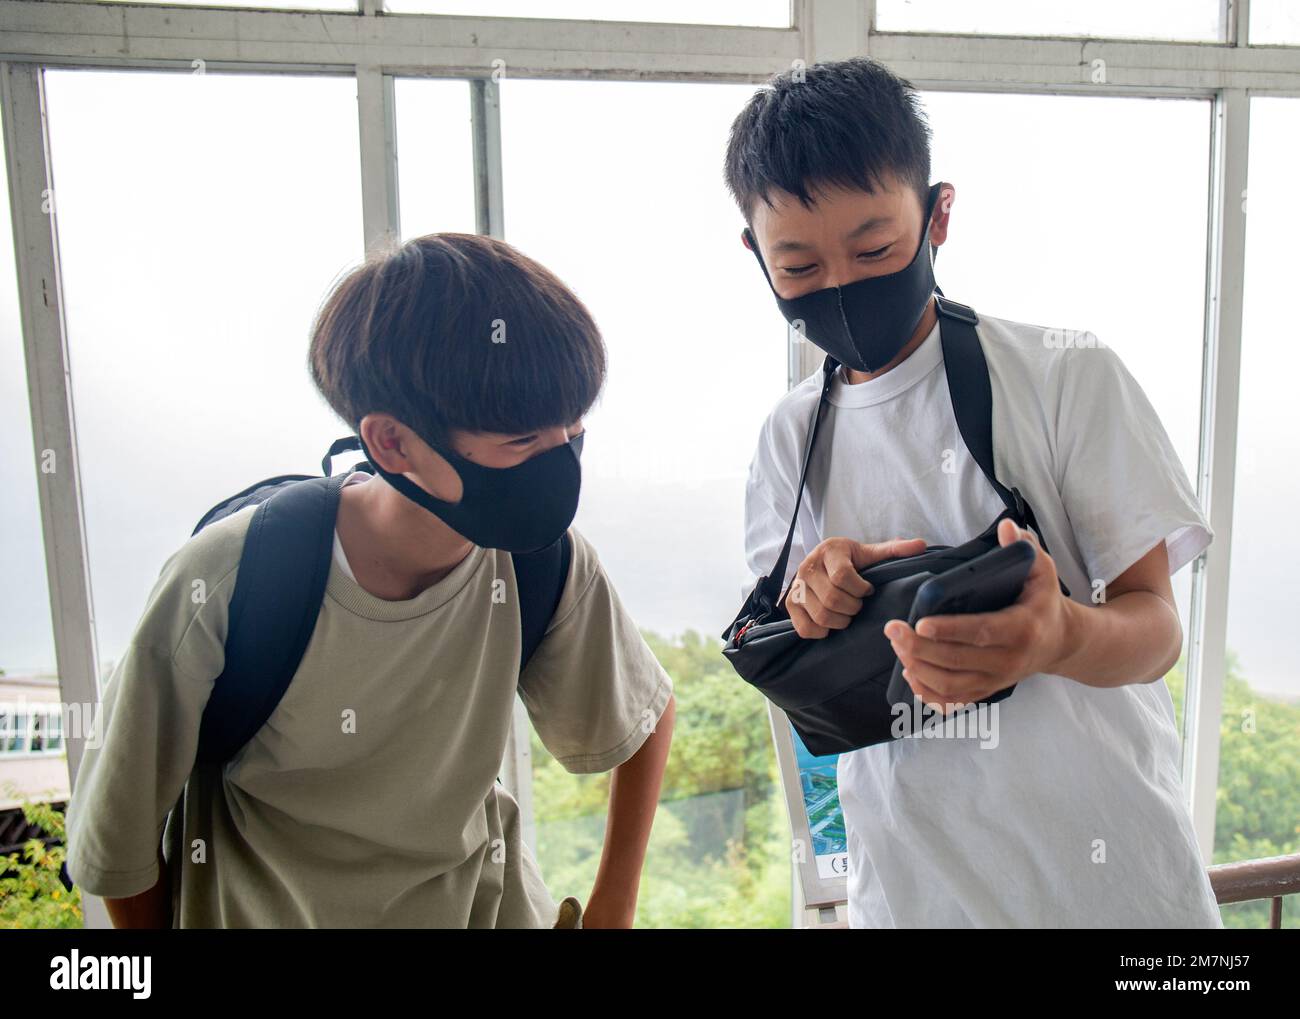 Deux garçons japonais de 13 ans dans des masques, des amis regardant un écran de téléphone mobile. Banque D'Images